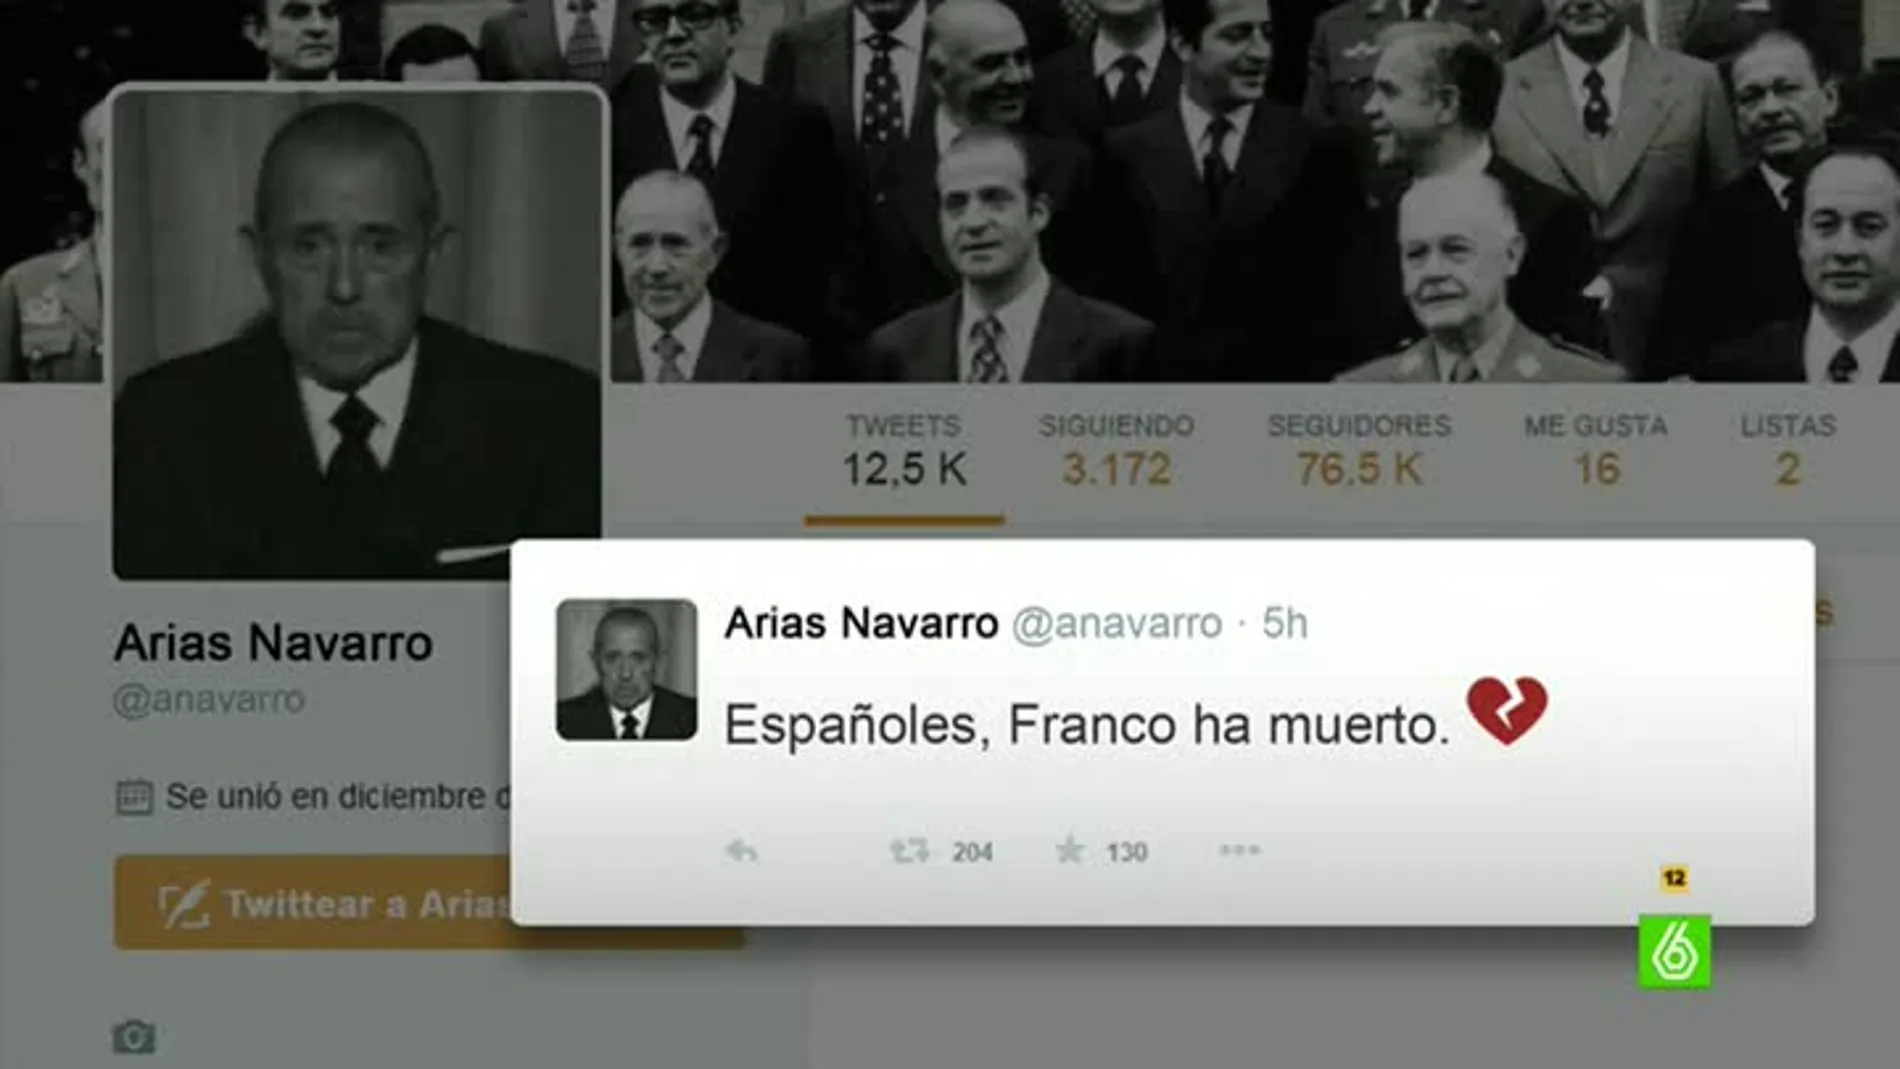 Así habría anunciado Arias Navarro la muerte de Franco en Twitter